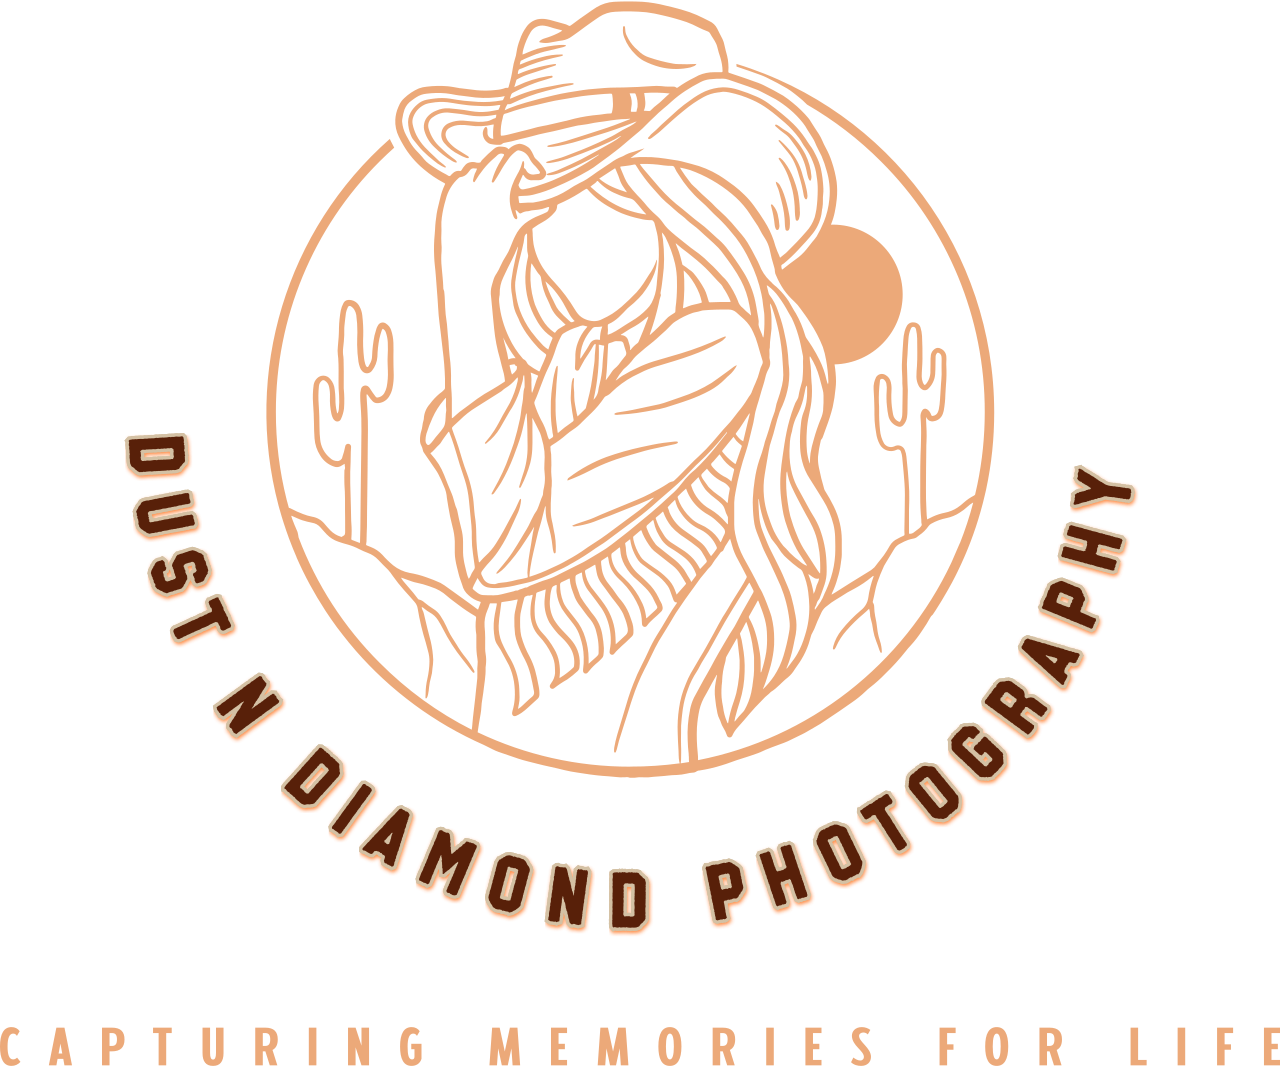 DUST N DIAMOND PHOTOGRAPHY 's logo